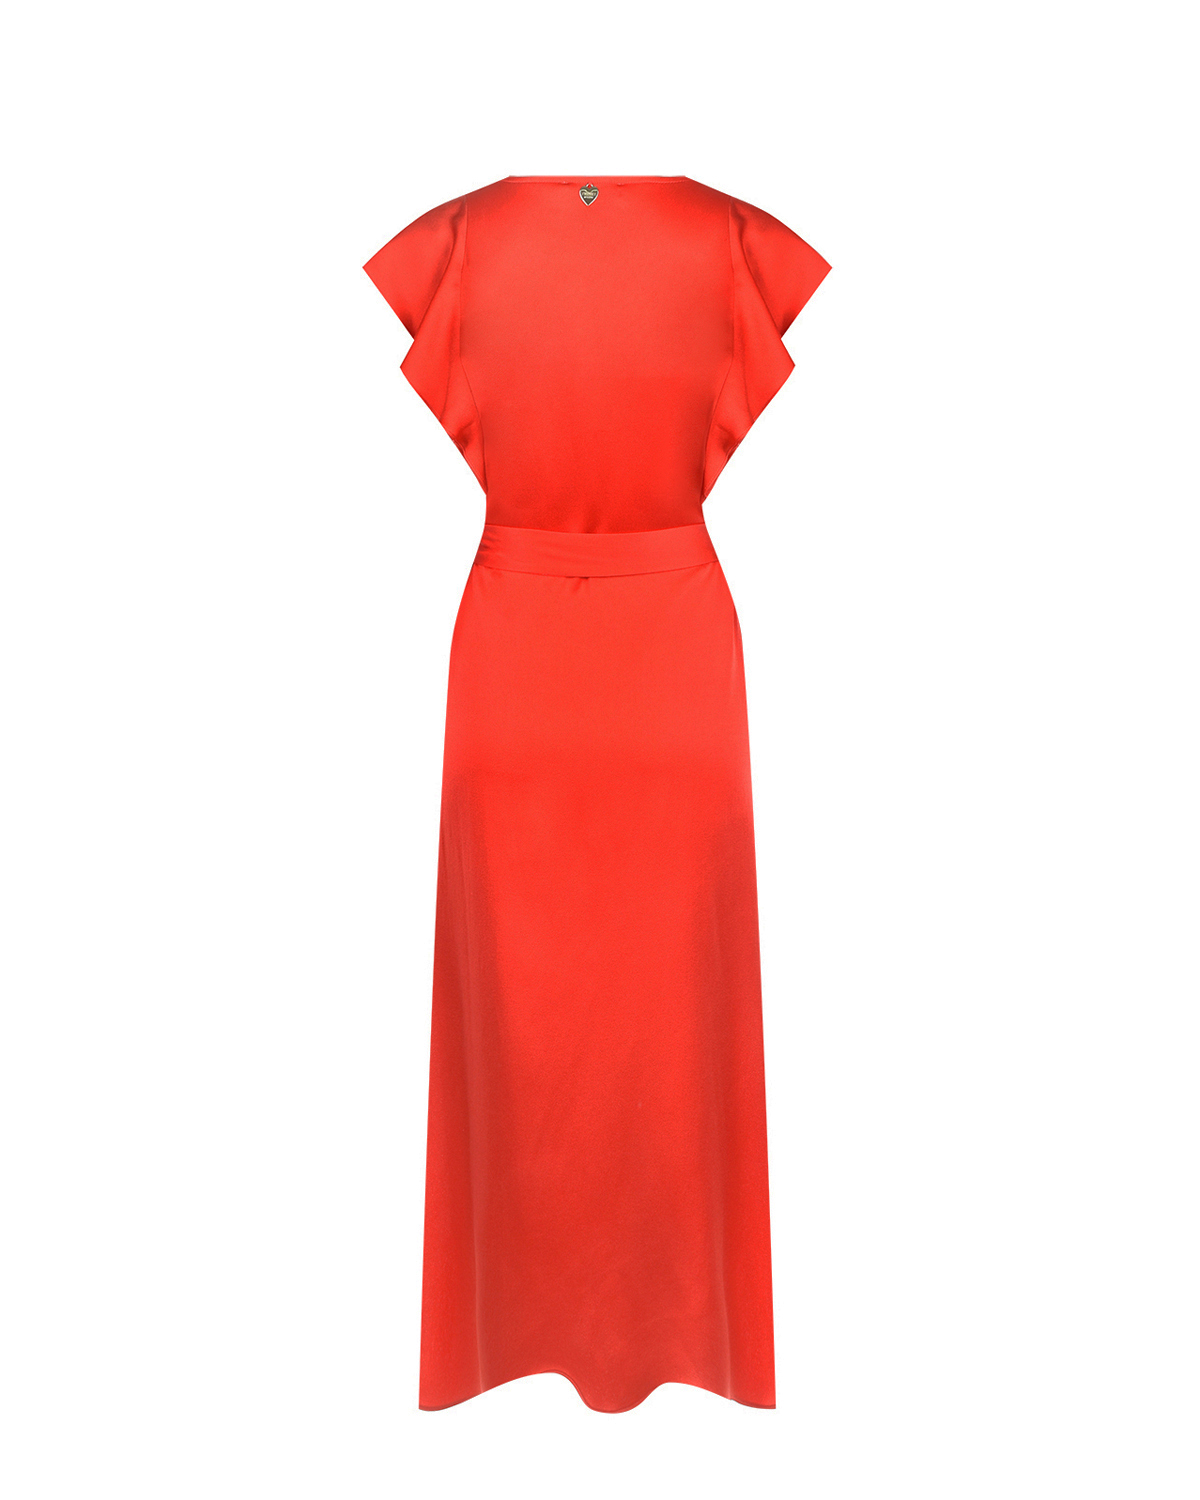 Красное платье с поясом TWINSET, размер 44, цвет красный - фото 6